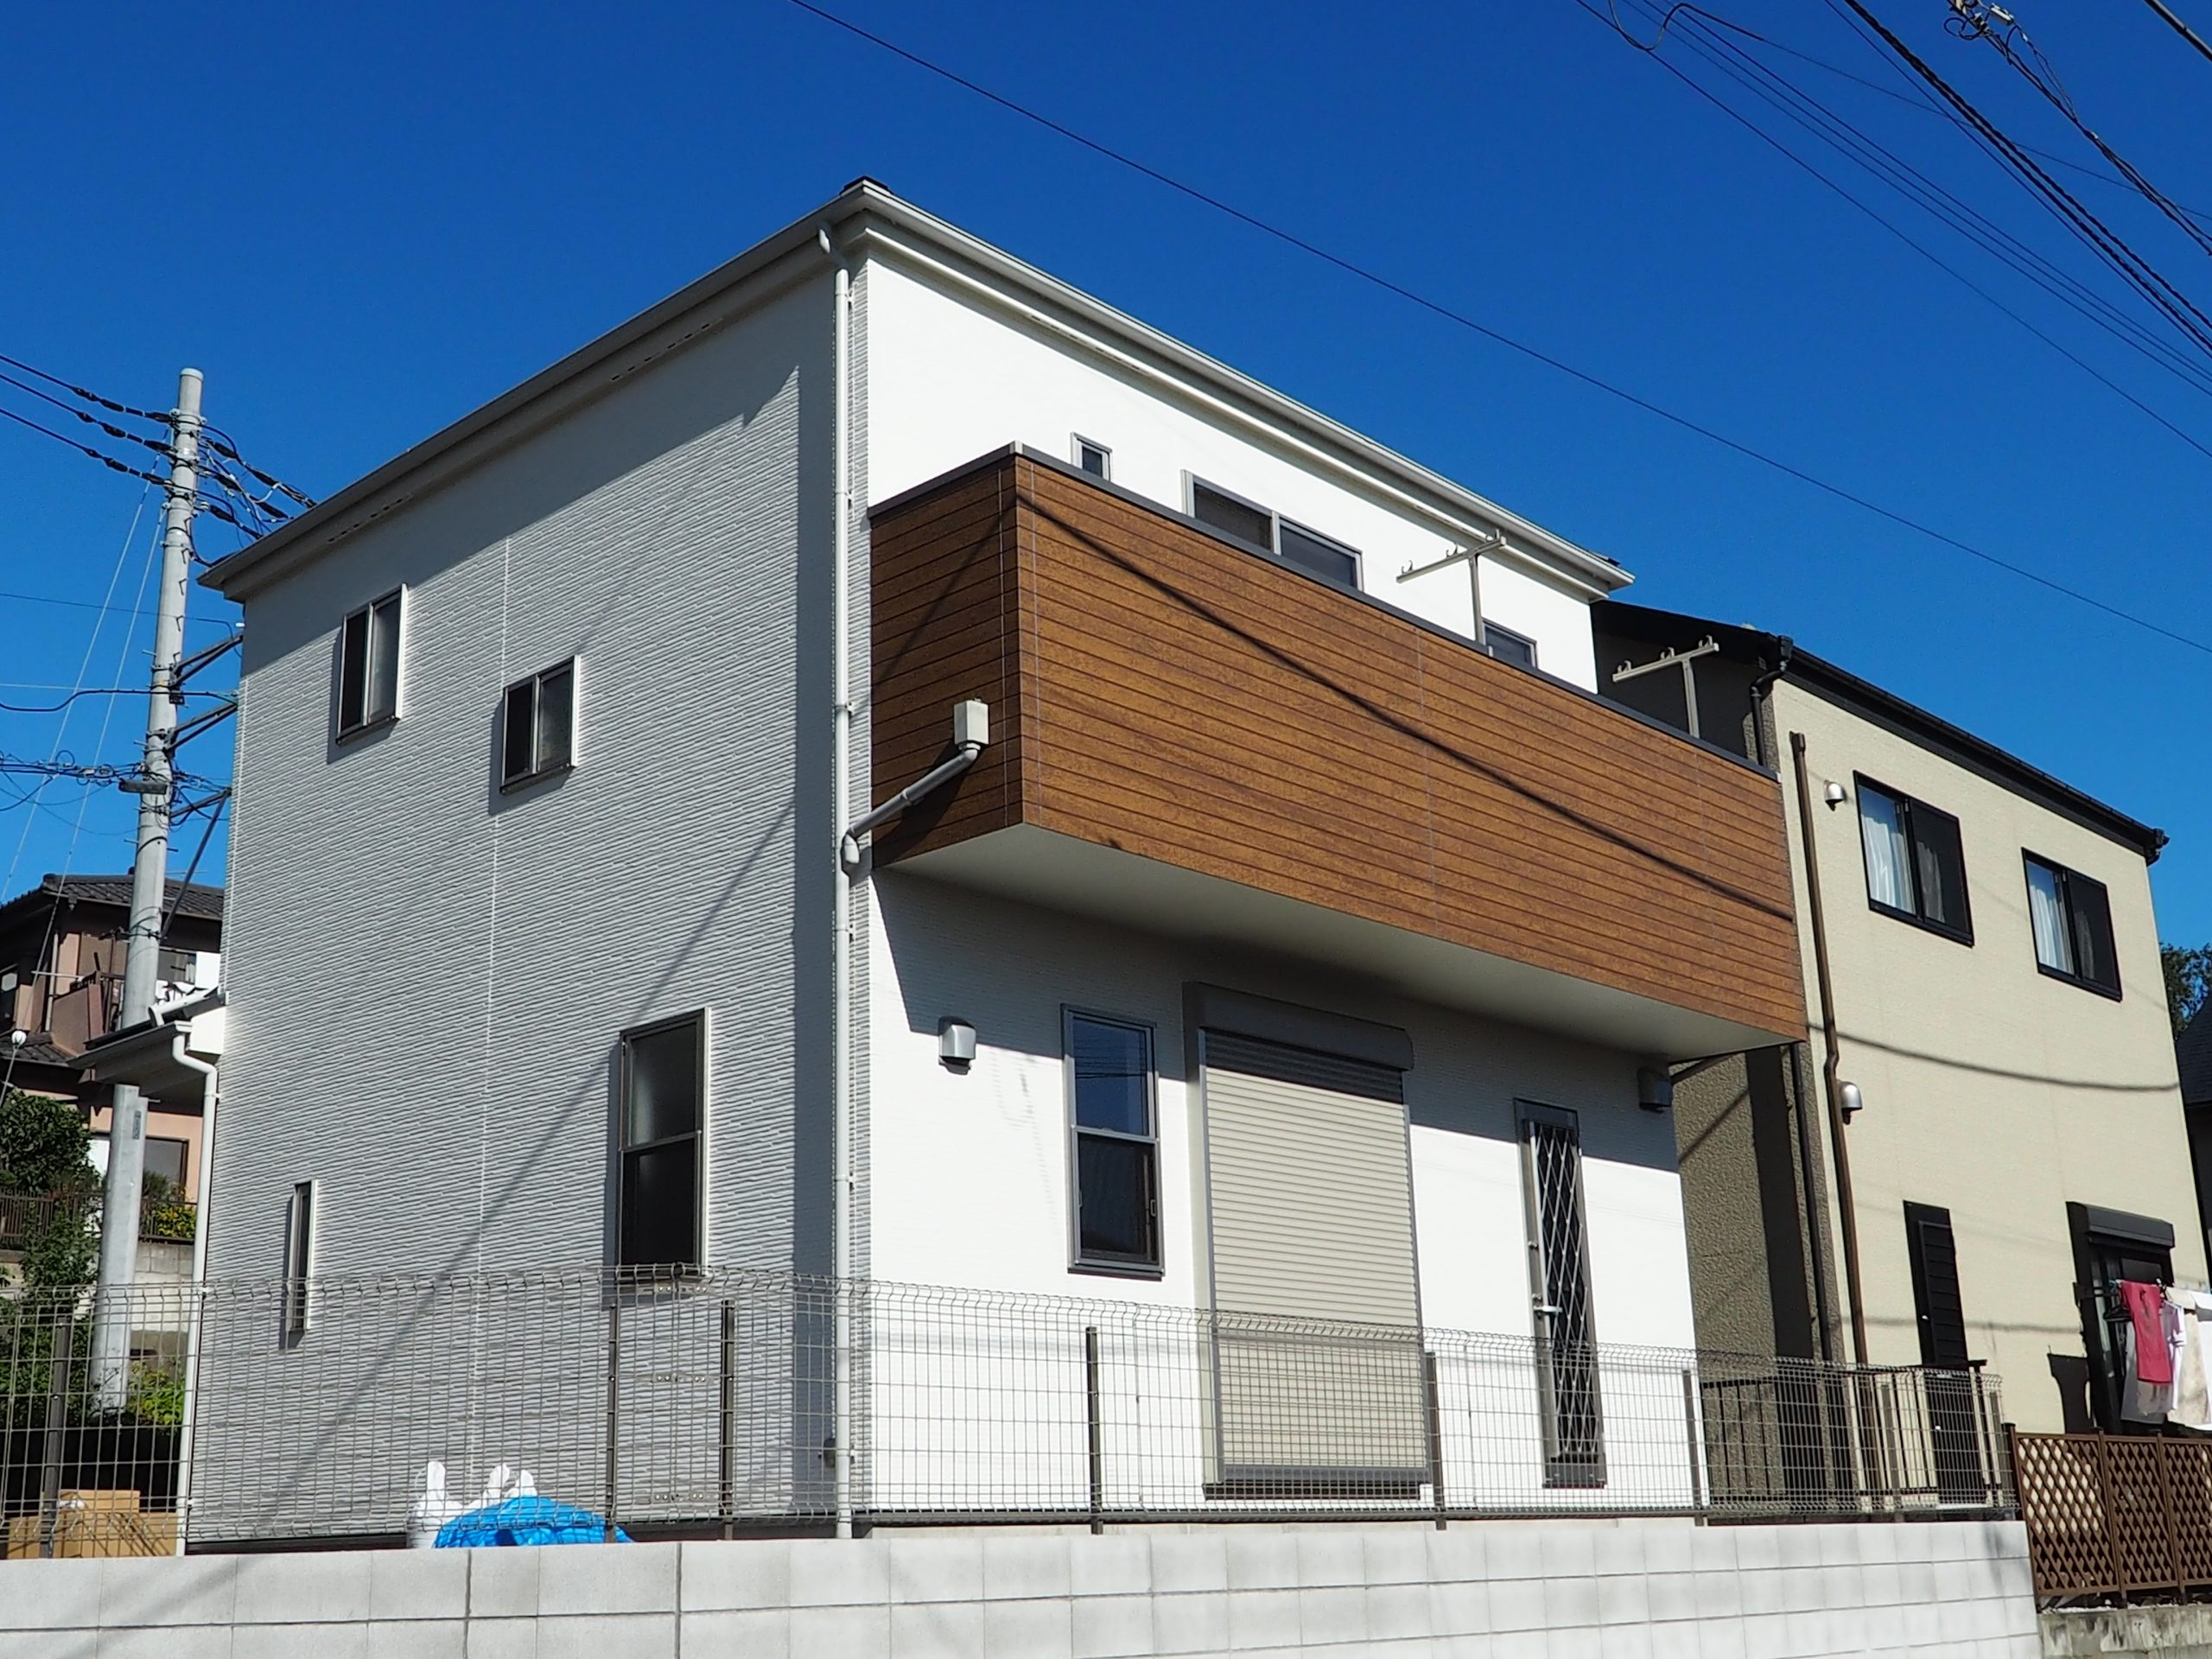 所沢上安松新築戸建て住宅外観画像。白を基調とした外壁にバルコニー部分の外観は木目調にしてアクセントをもたせました。